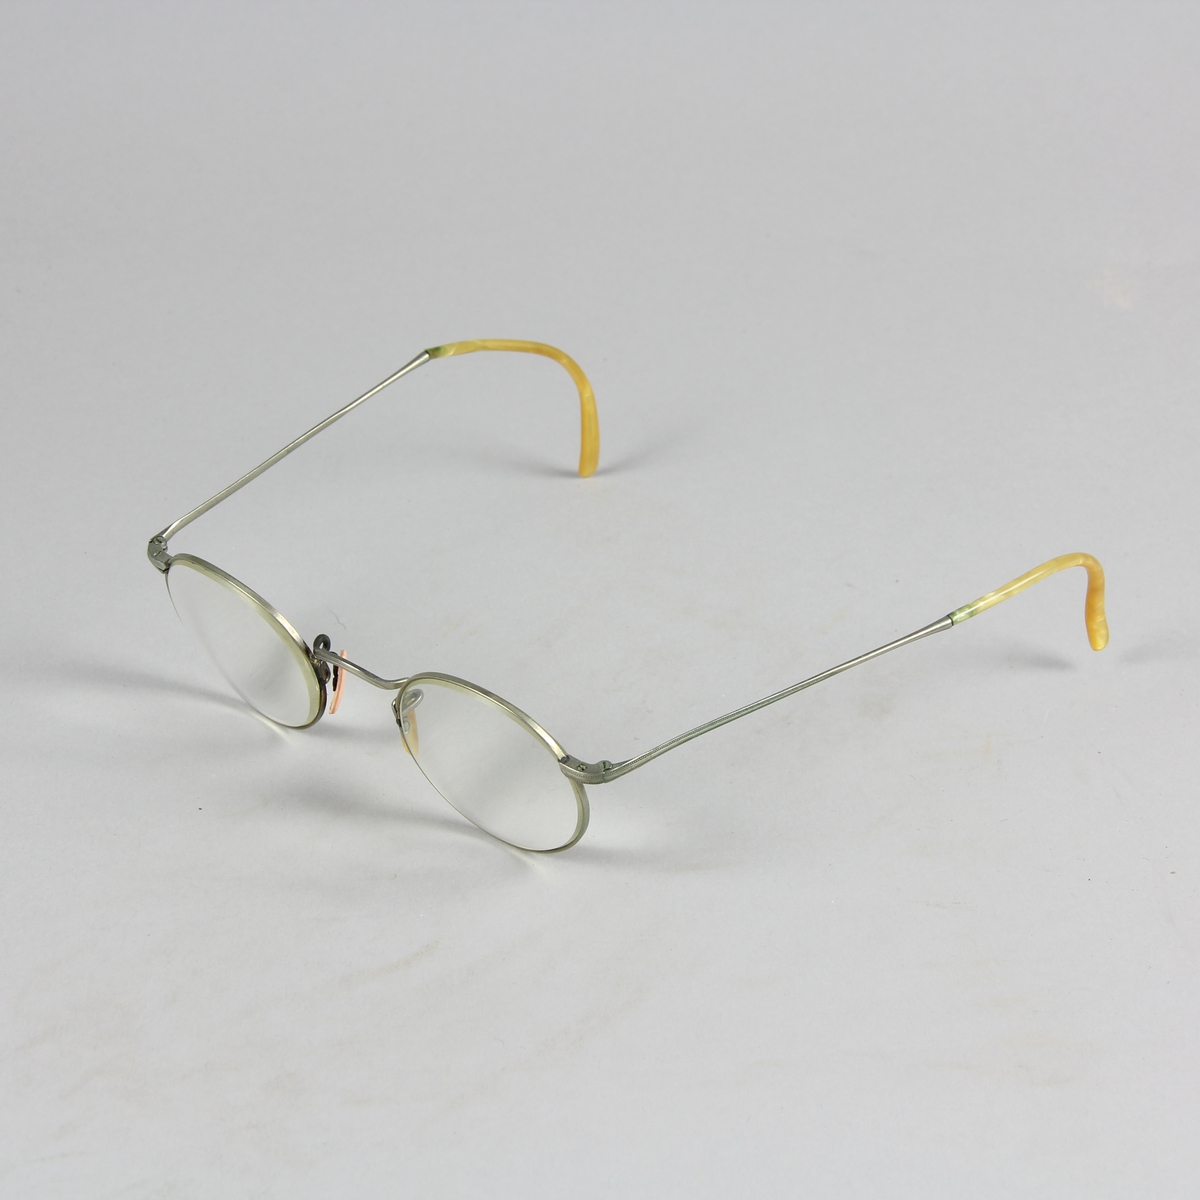 Glasögon med runda glas infattade i metall och böjda skalmar av metall som avslutas med annat material i gulvitt. Näskuddar i gulvitt respektive rosa.